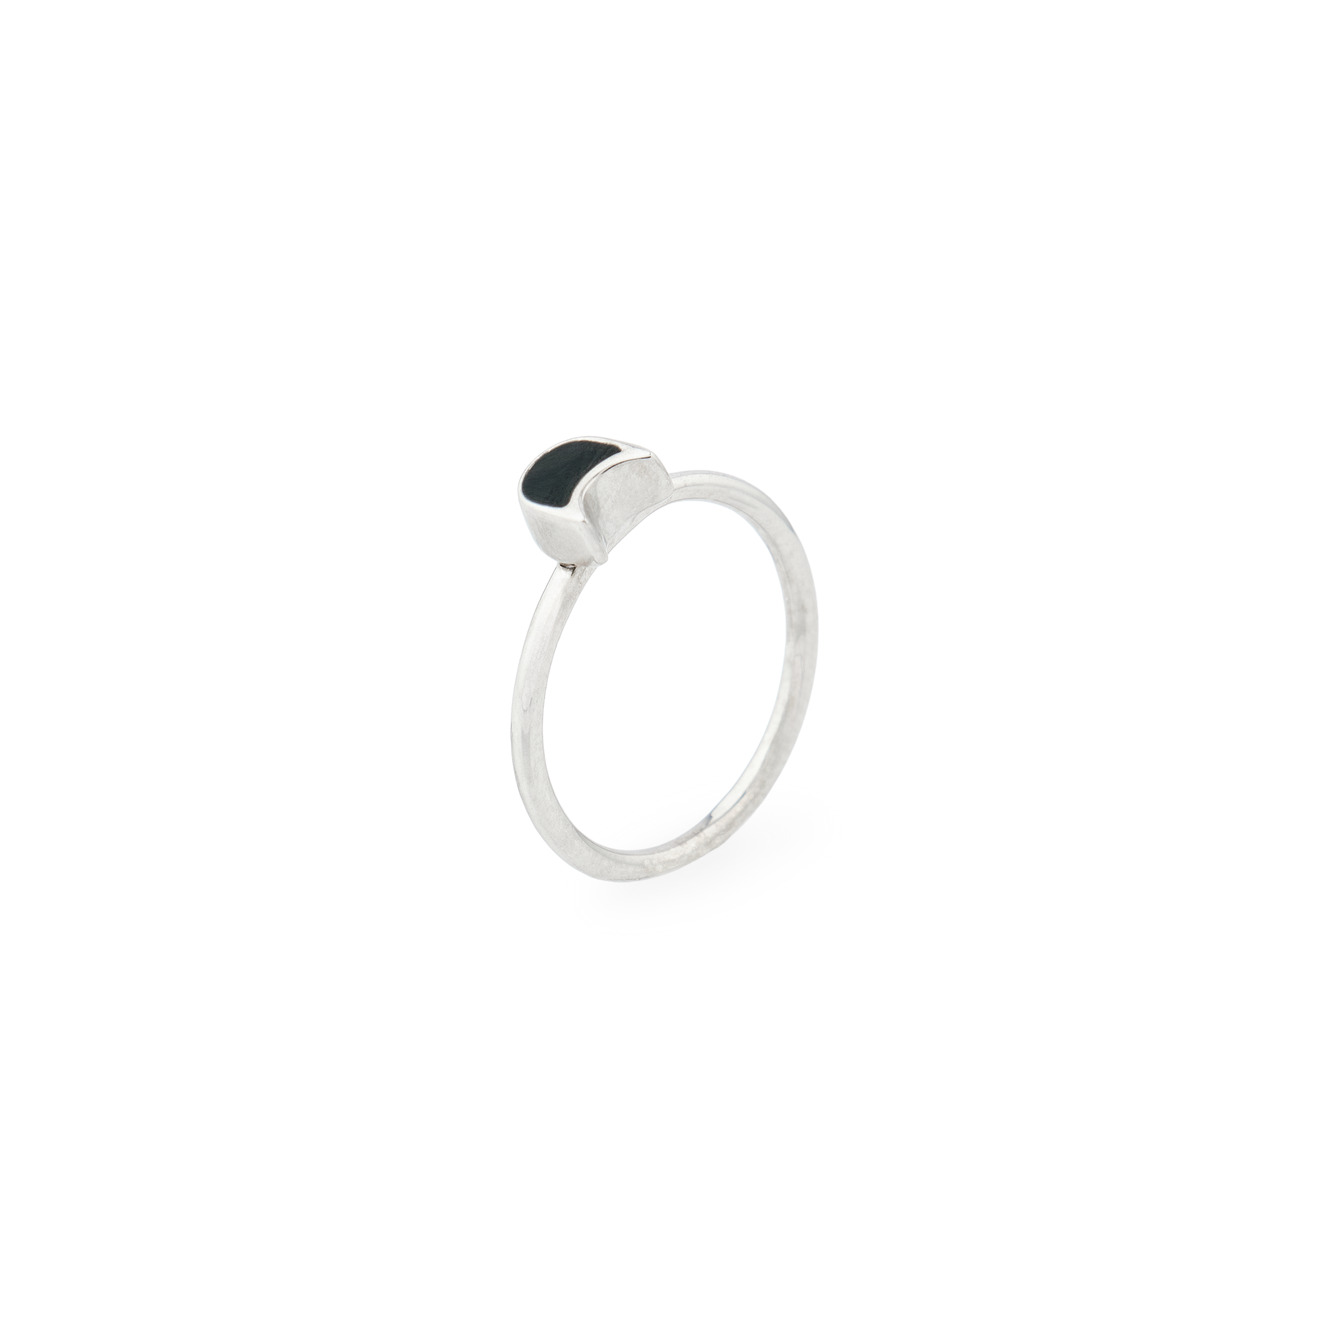 ура jewelry кольцо из серебра с жемчугом УРА jewelry Кольцо-котенок из серебра с черной эмалью